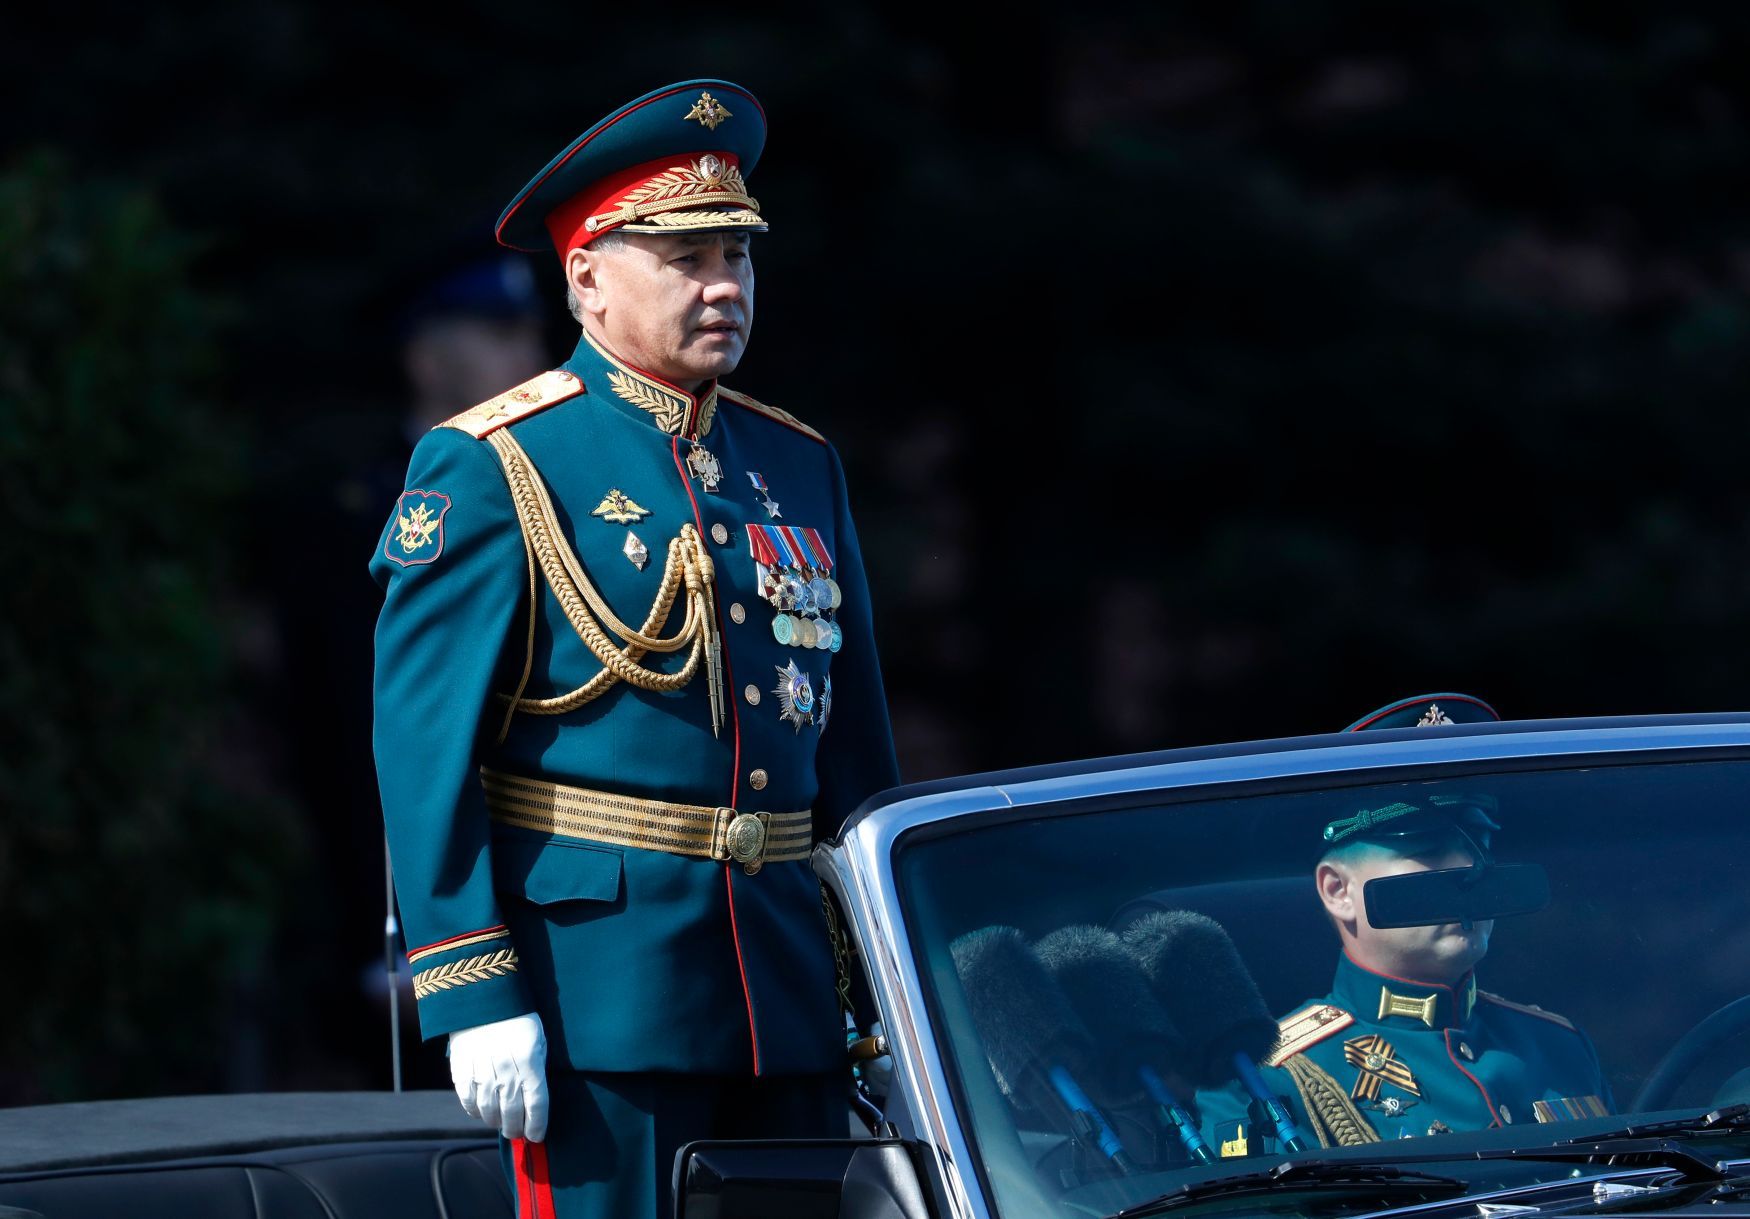 Vojenská přehlídka v Moskvě, 9. května 2018, Sergej Šojgu